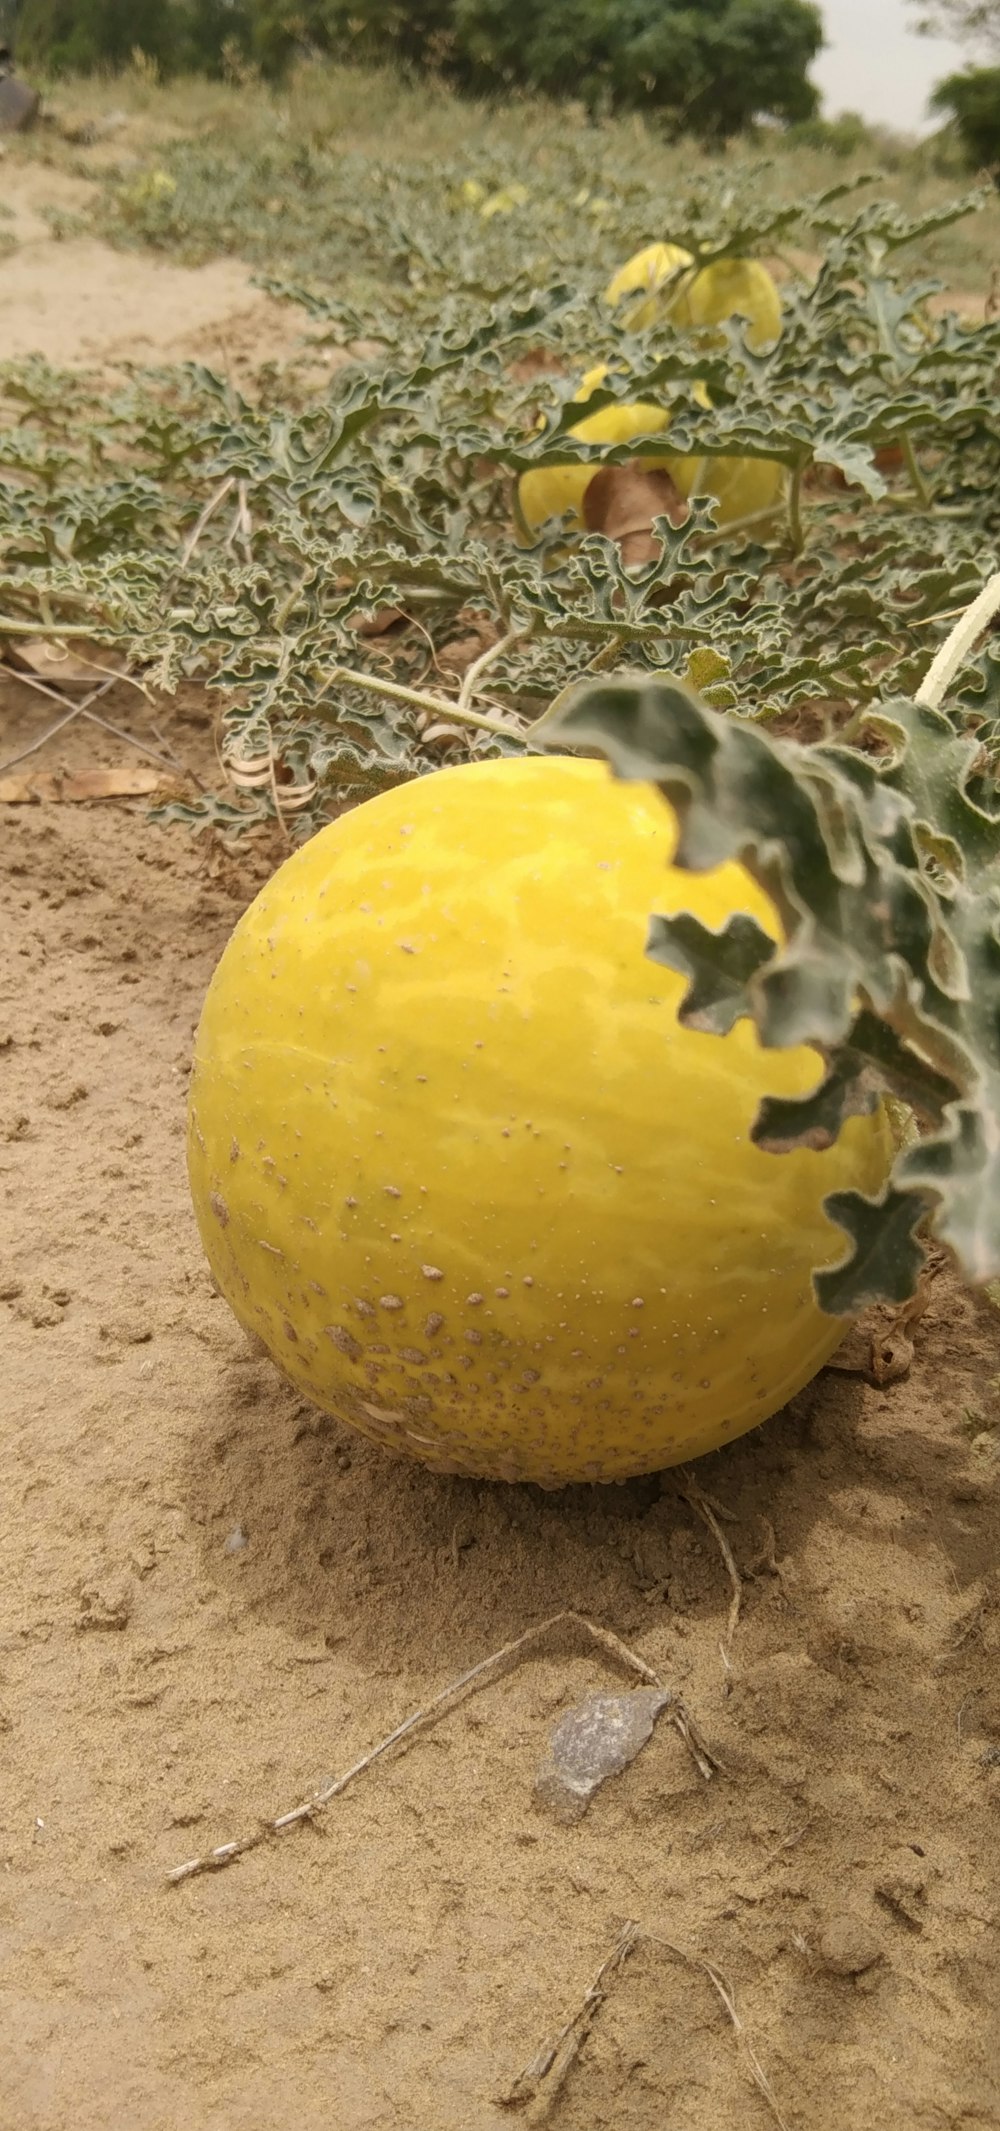 Eine gelbe Frucht auf dem Boden